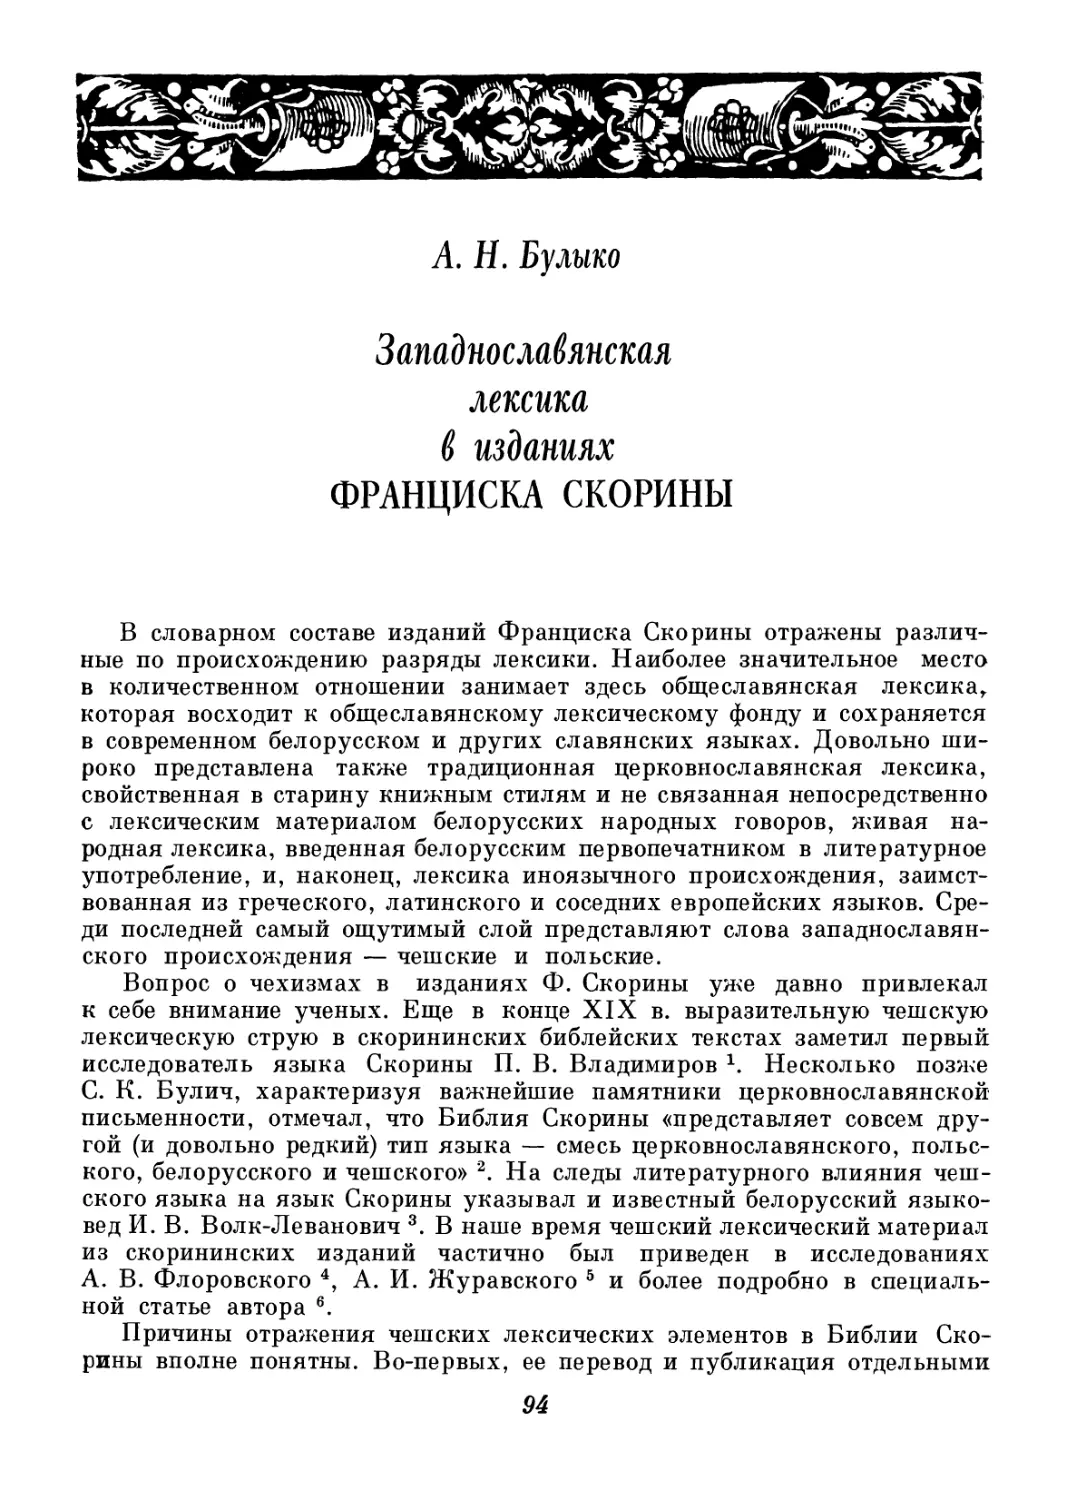 A. Н. Бyлыко - Западнославянская лексика в изданиях Ф. Скорины